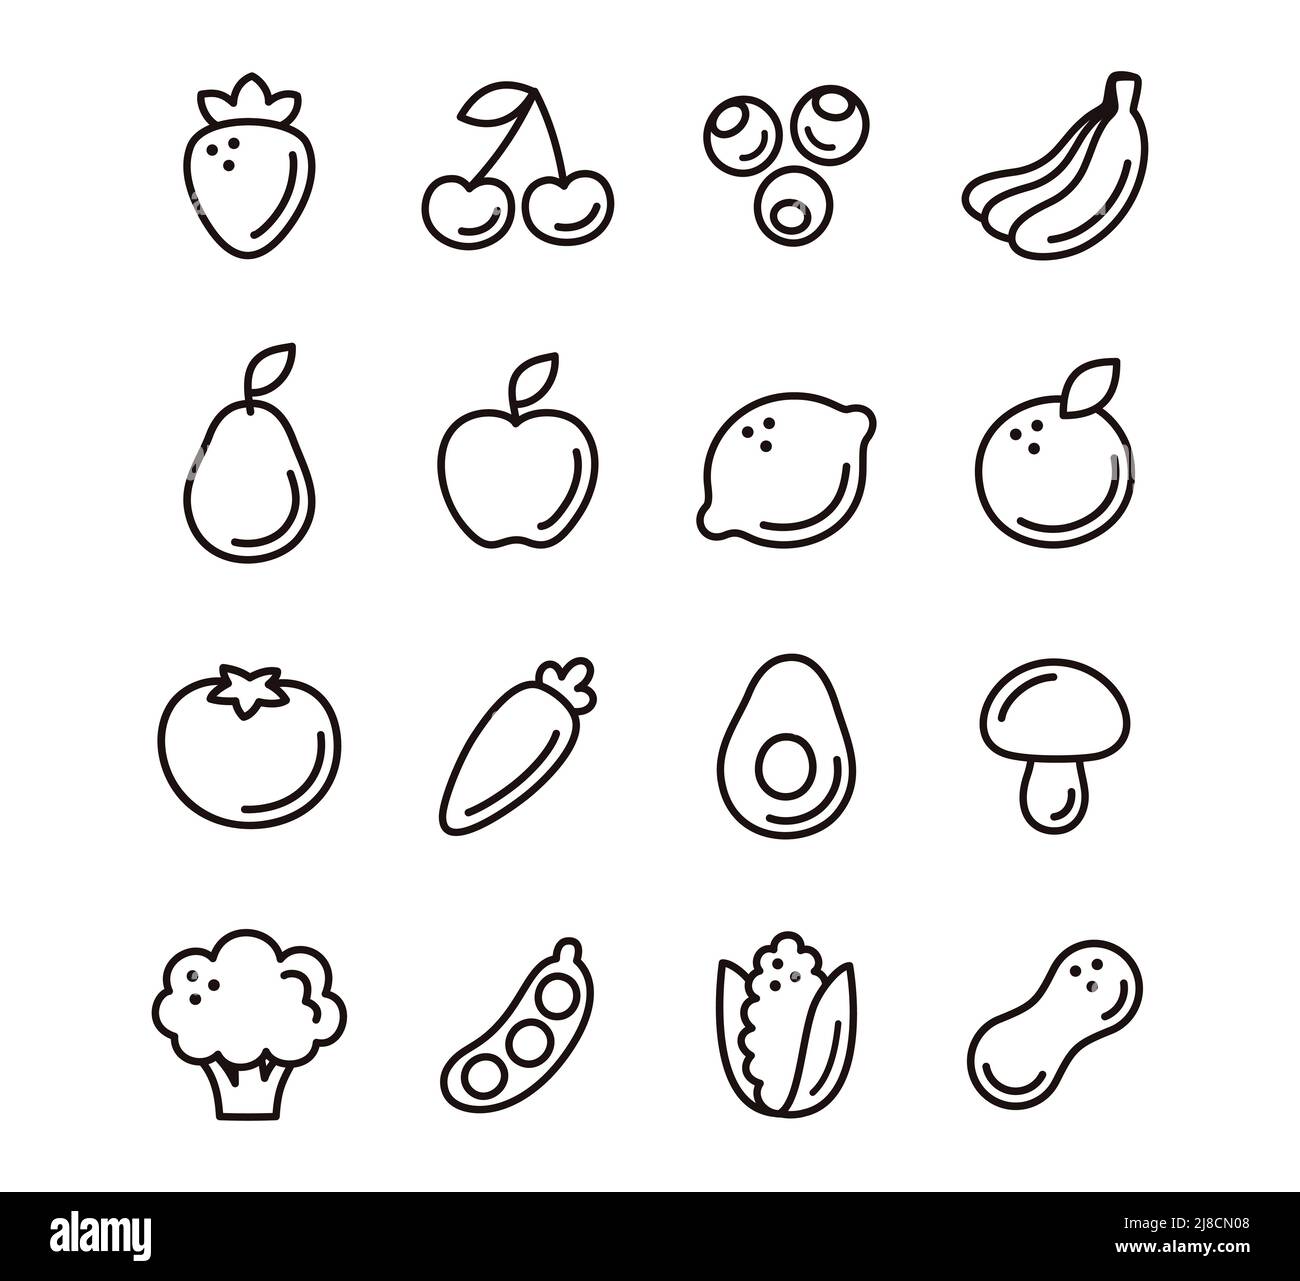 Cartoon icone di frutta e verdura disegnate a mano in stile doodle. Linea bianca e nera art. Pittogrammi semplici, set di illustrazioni vettoriali. Illustrazione Vettoriale